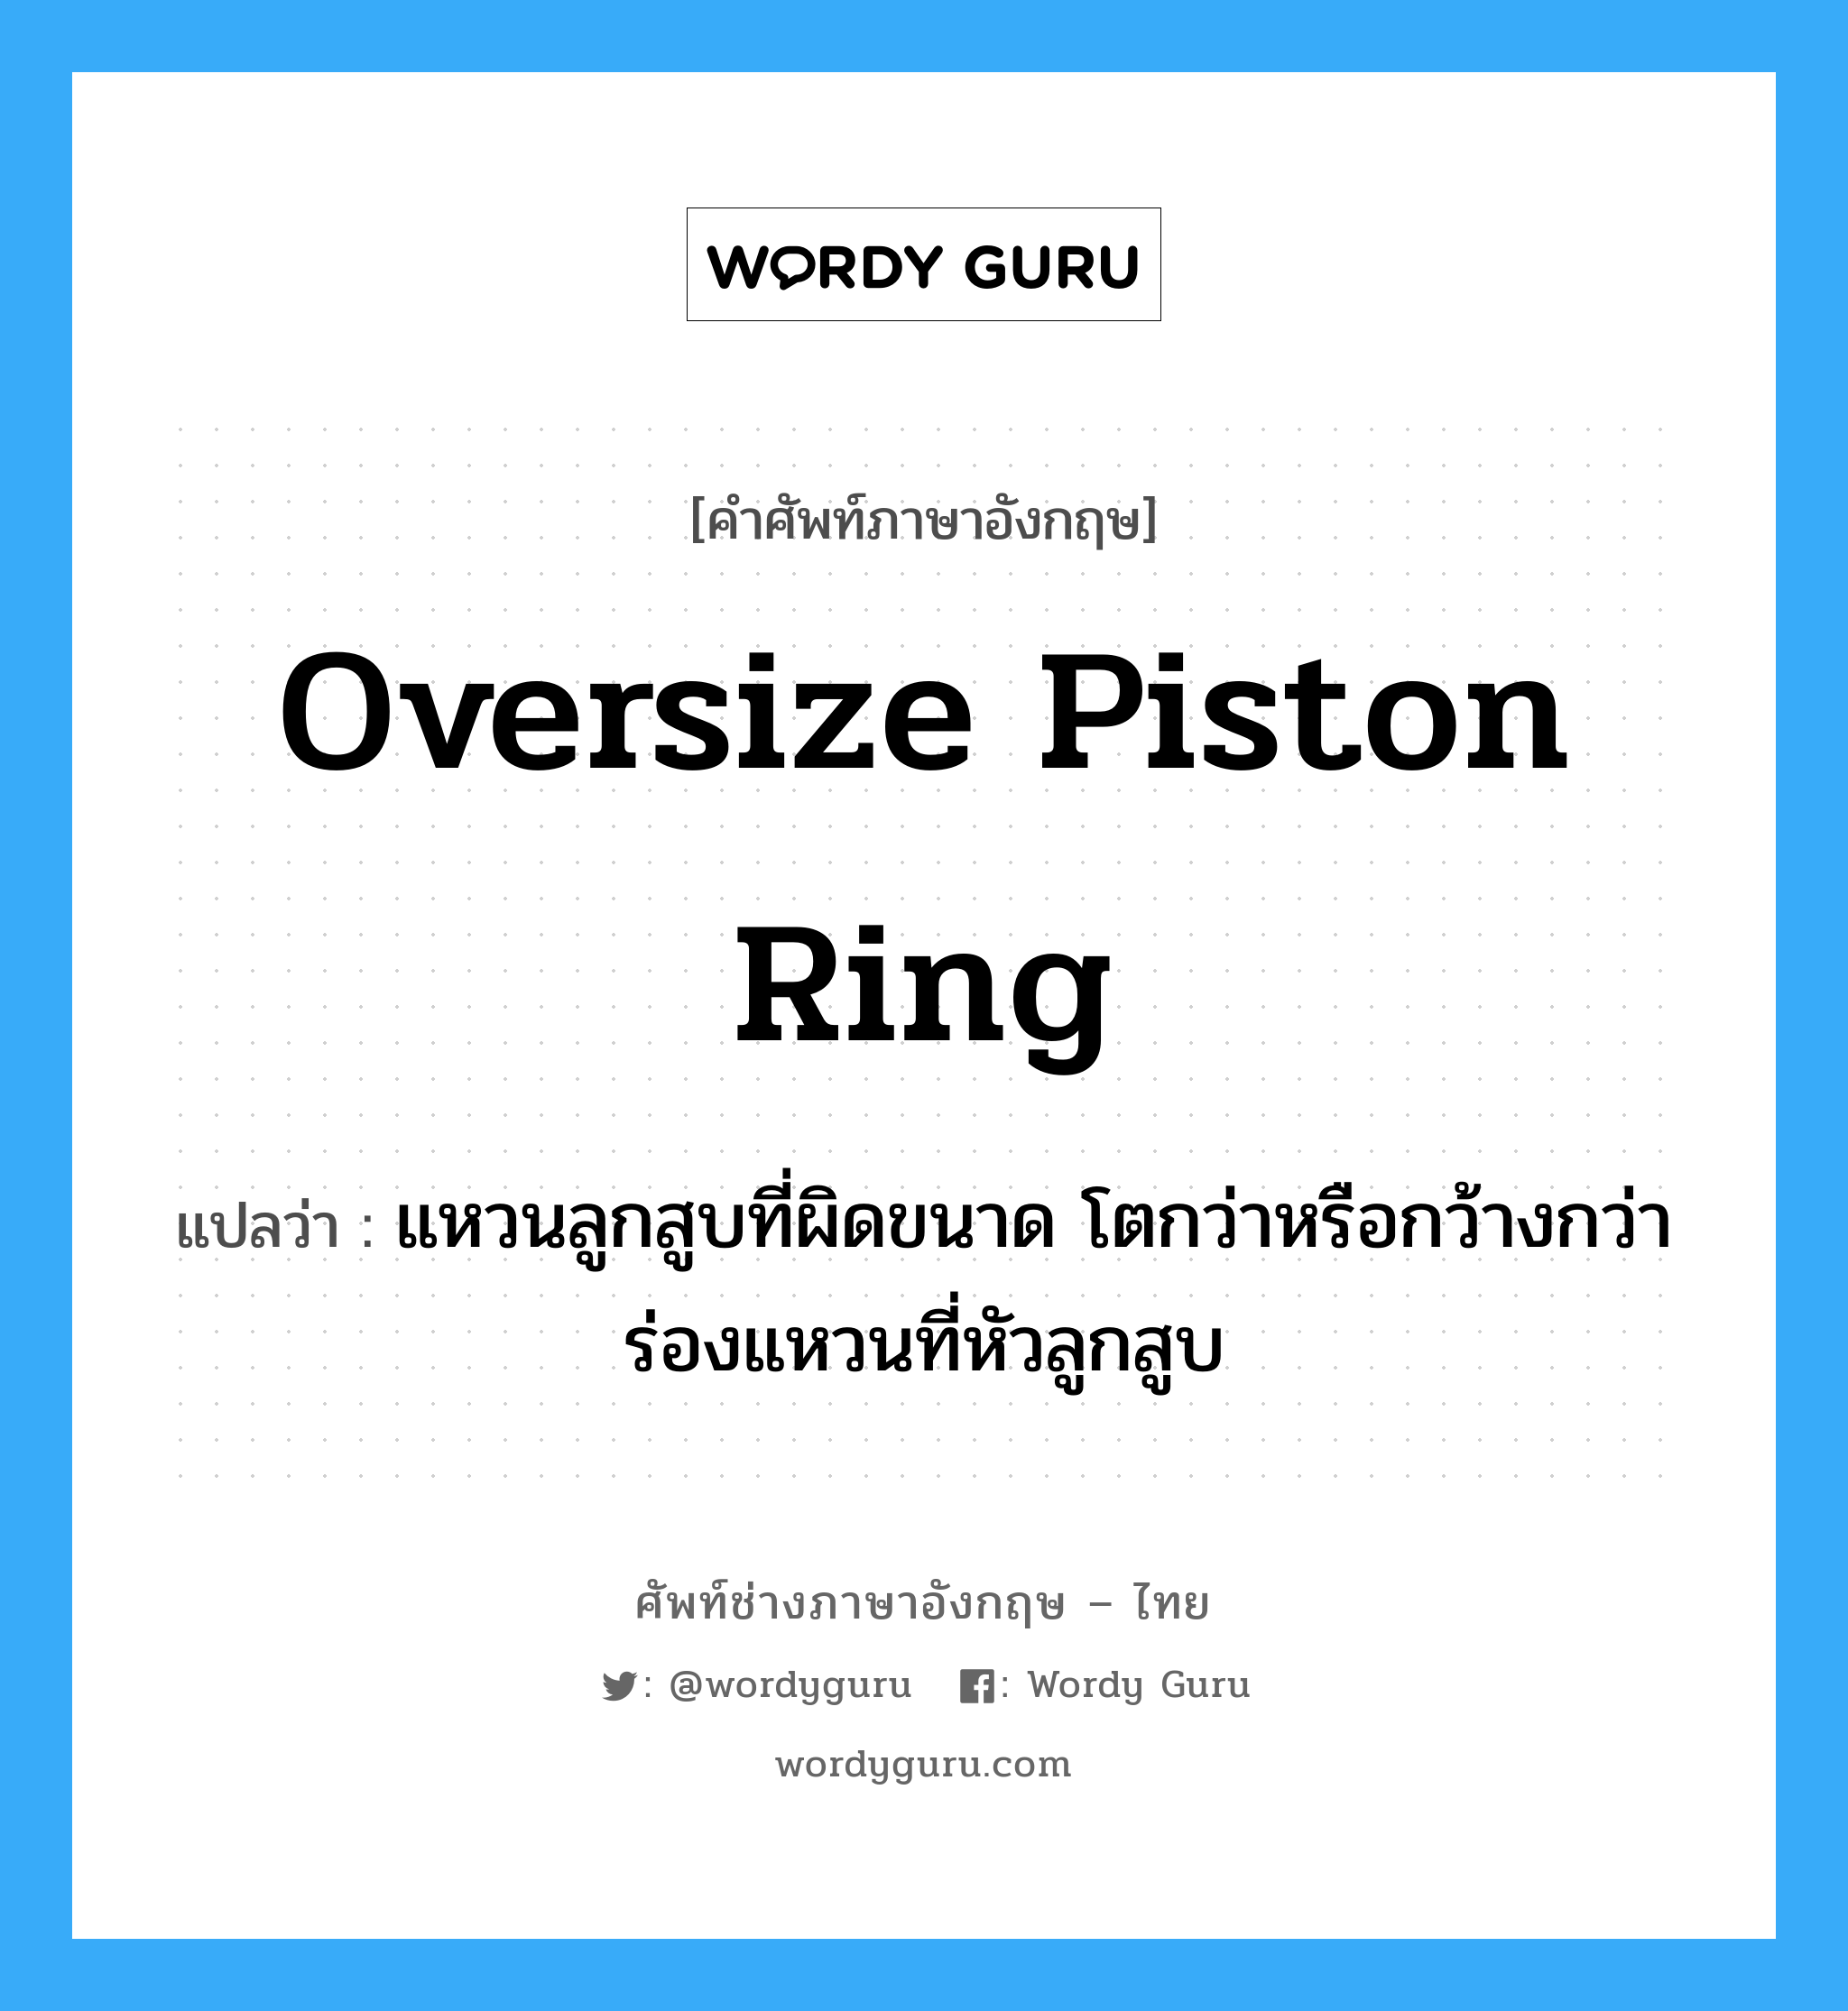 oversize piston ring แปลว่า?, คำศัพท์ช่างภาษาอังกฤษ - ไทย oversize piston ring คำศัพท์ภาษาอังกฤษ oversize piston ring แปลว่า แหวนลูกสูบที่ผิดขนาด โตกว่าหรือกว้างกว่าร่องแหวนที่หัวลูกสูบ